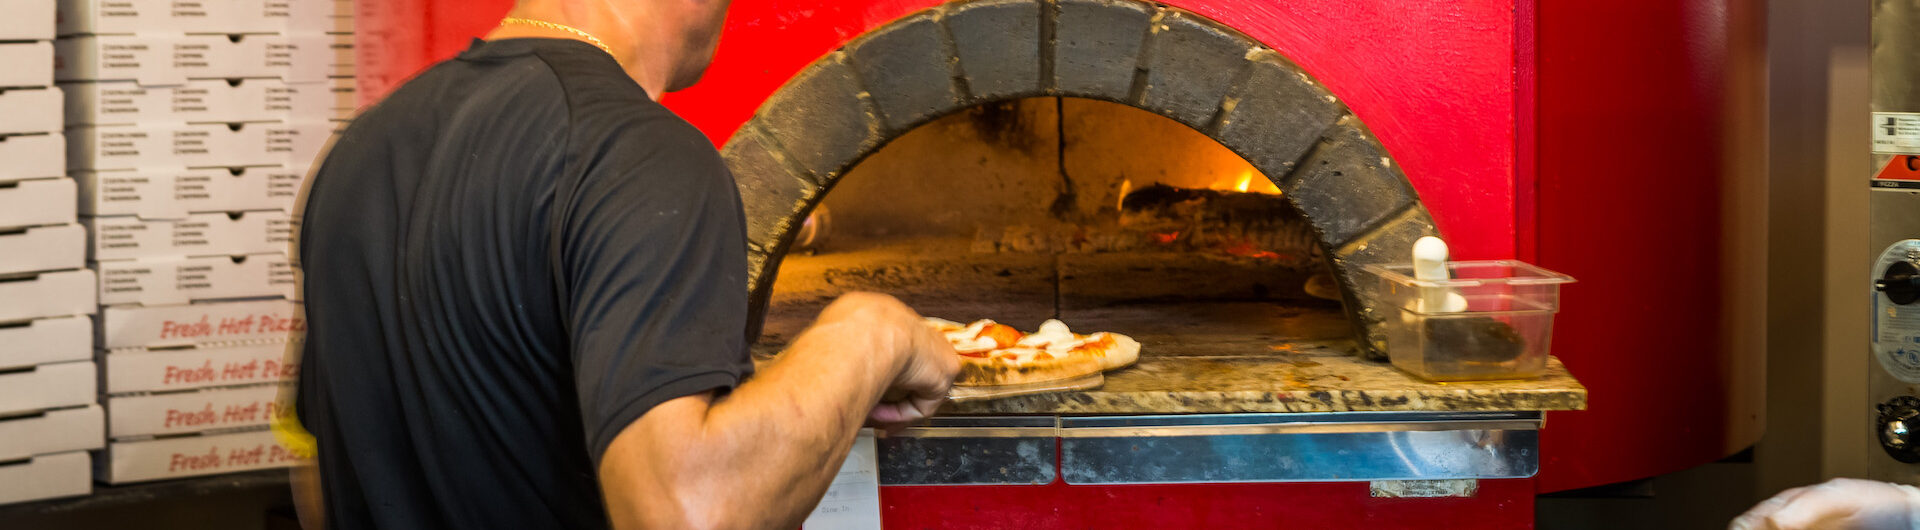 Arte Pizza brick oven